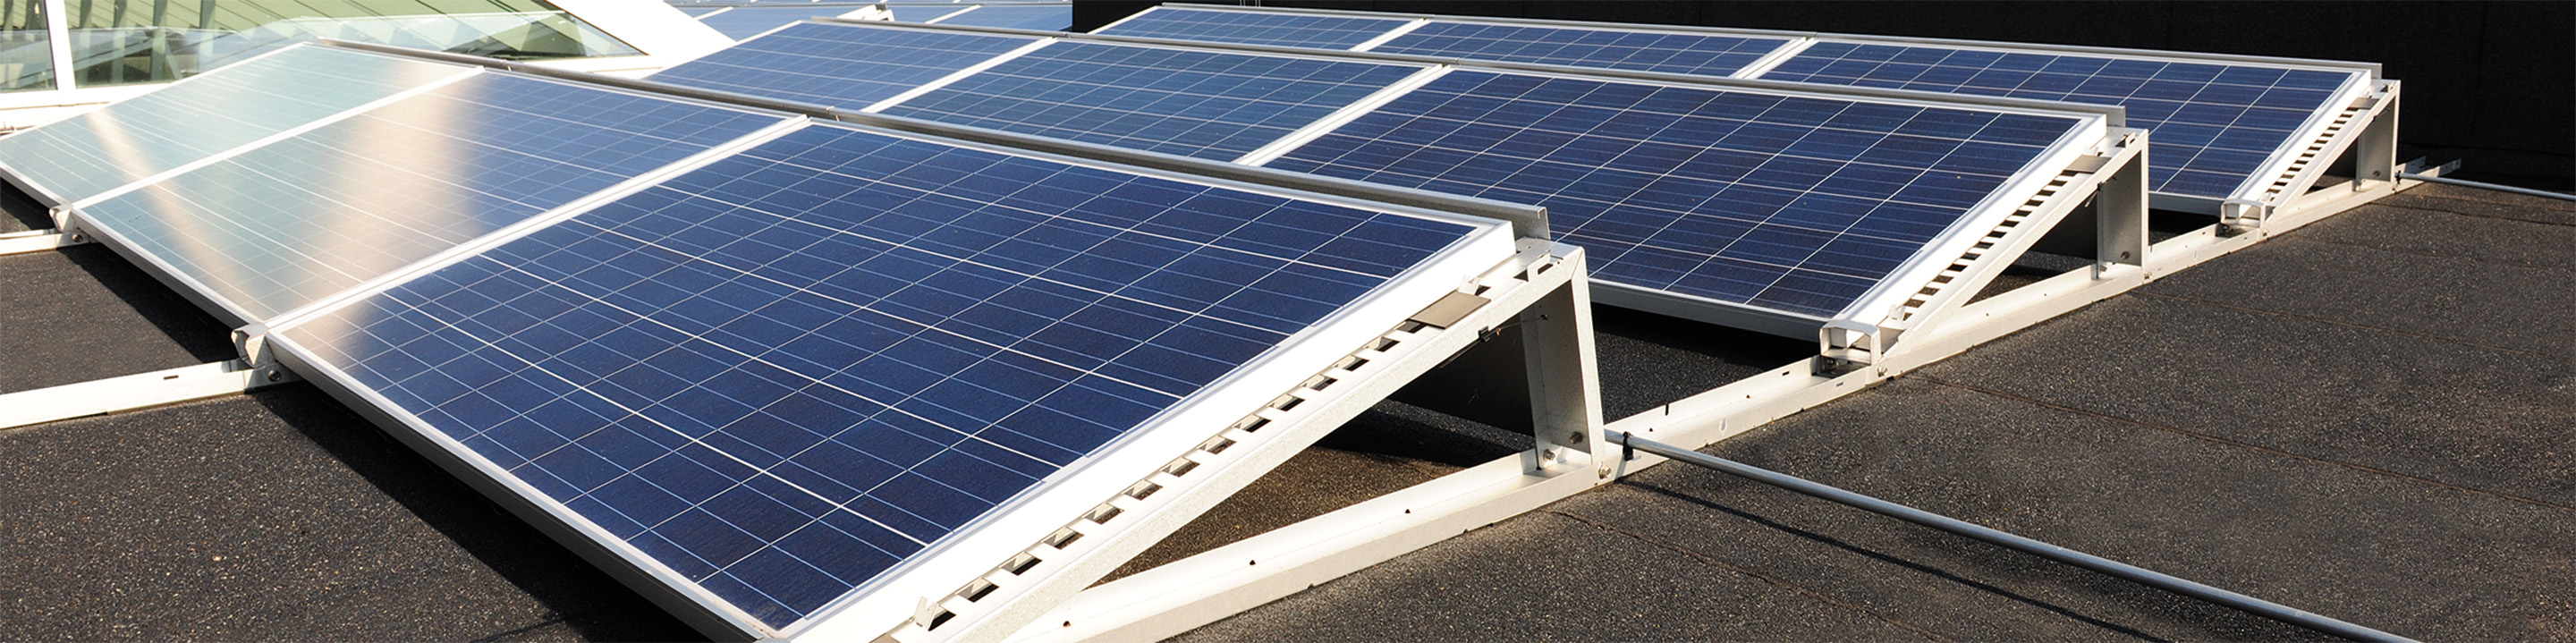 PV-Unterkonstruktion Miralux Flex in Süd-Ausrichtung der Firma Richard Brink auf Flachdach mit installierten Solarpanels